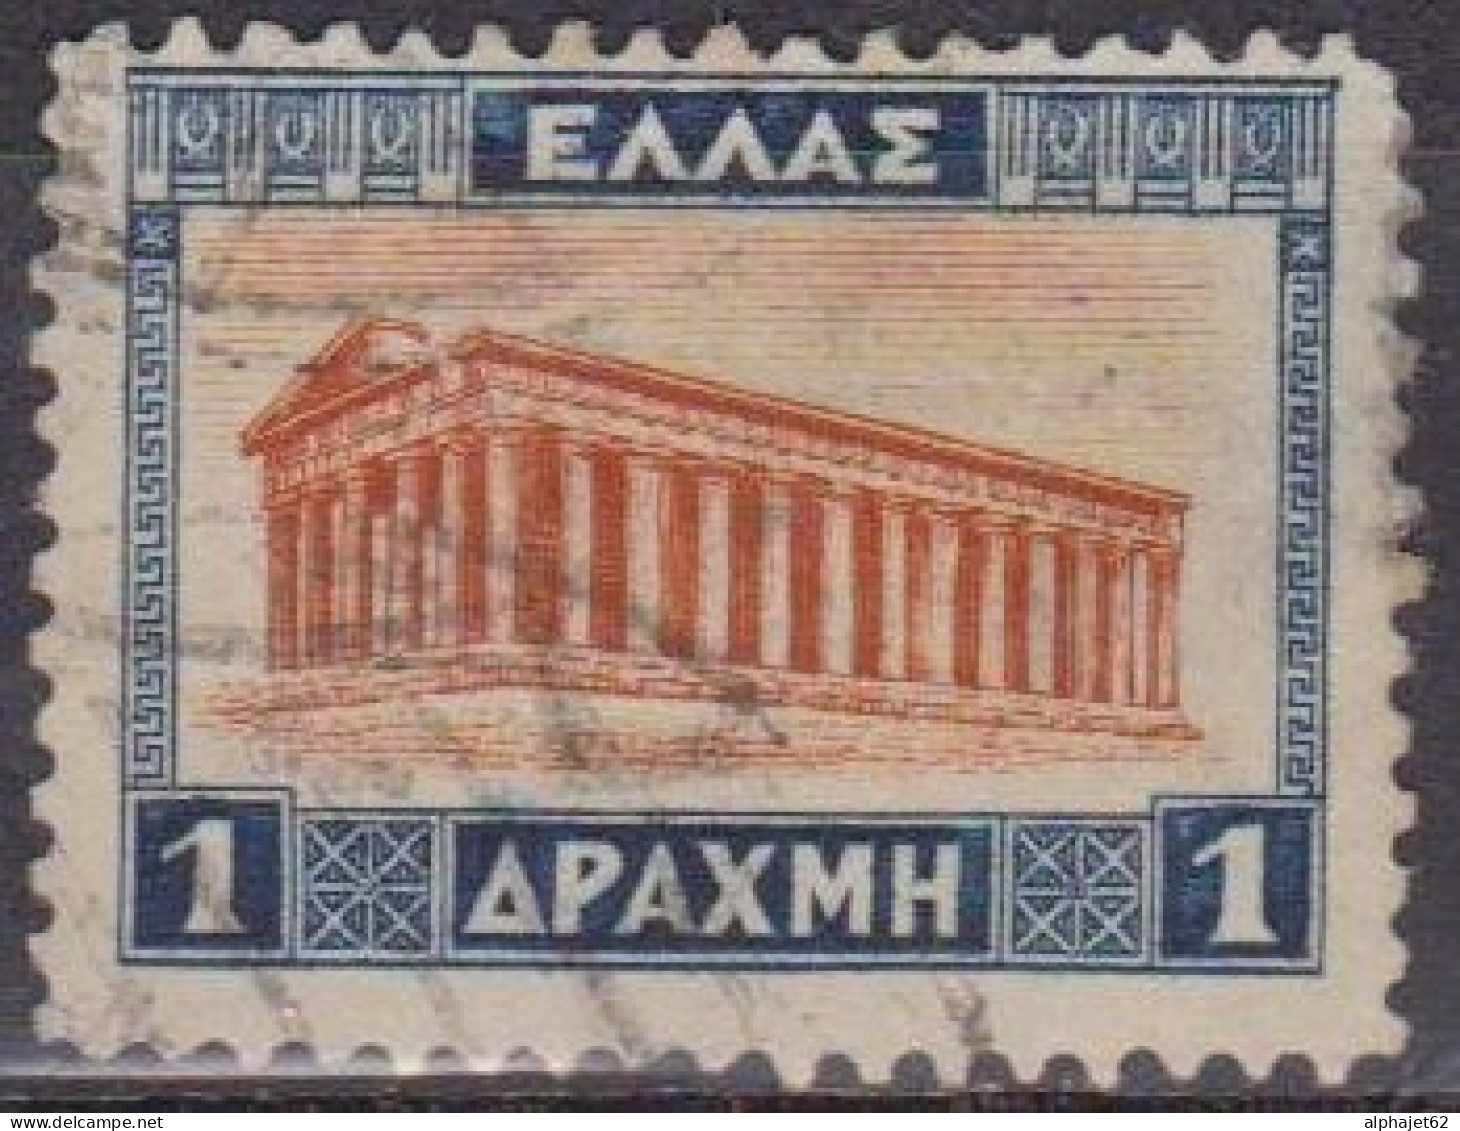 Temple De Thésée à Athènes - GRECE - Archéologie - N°  355 - 1927 - Oblitérés